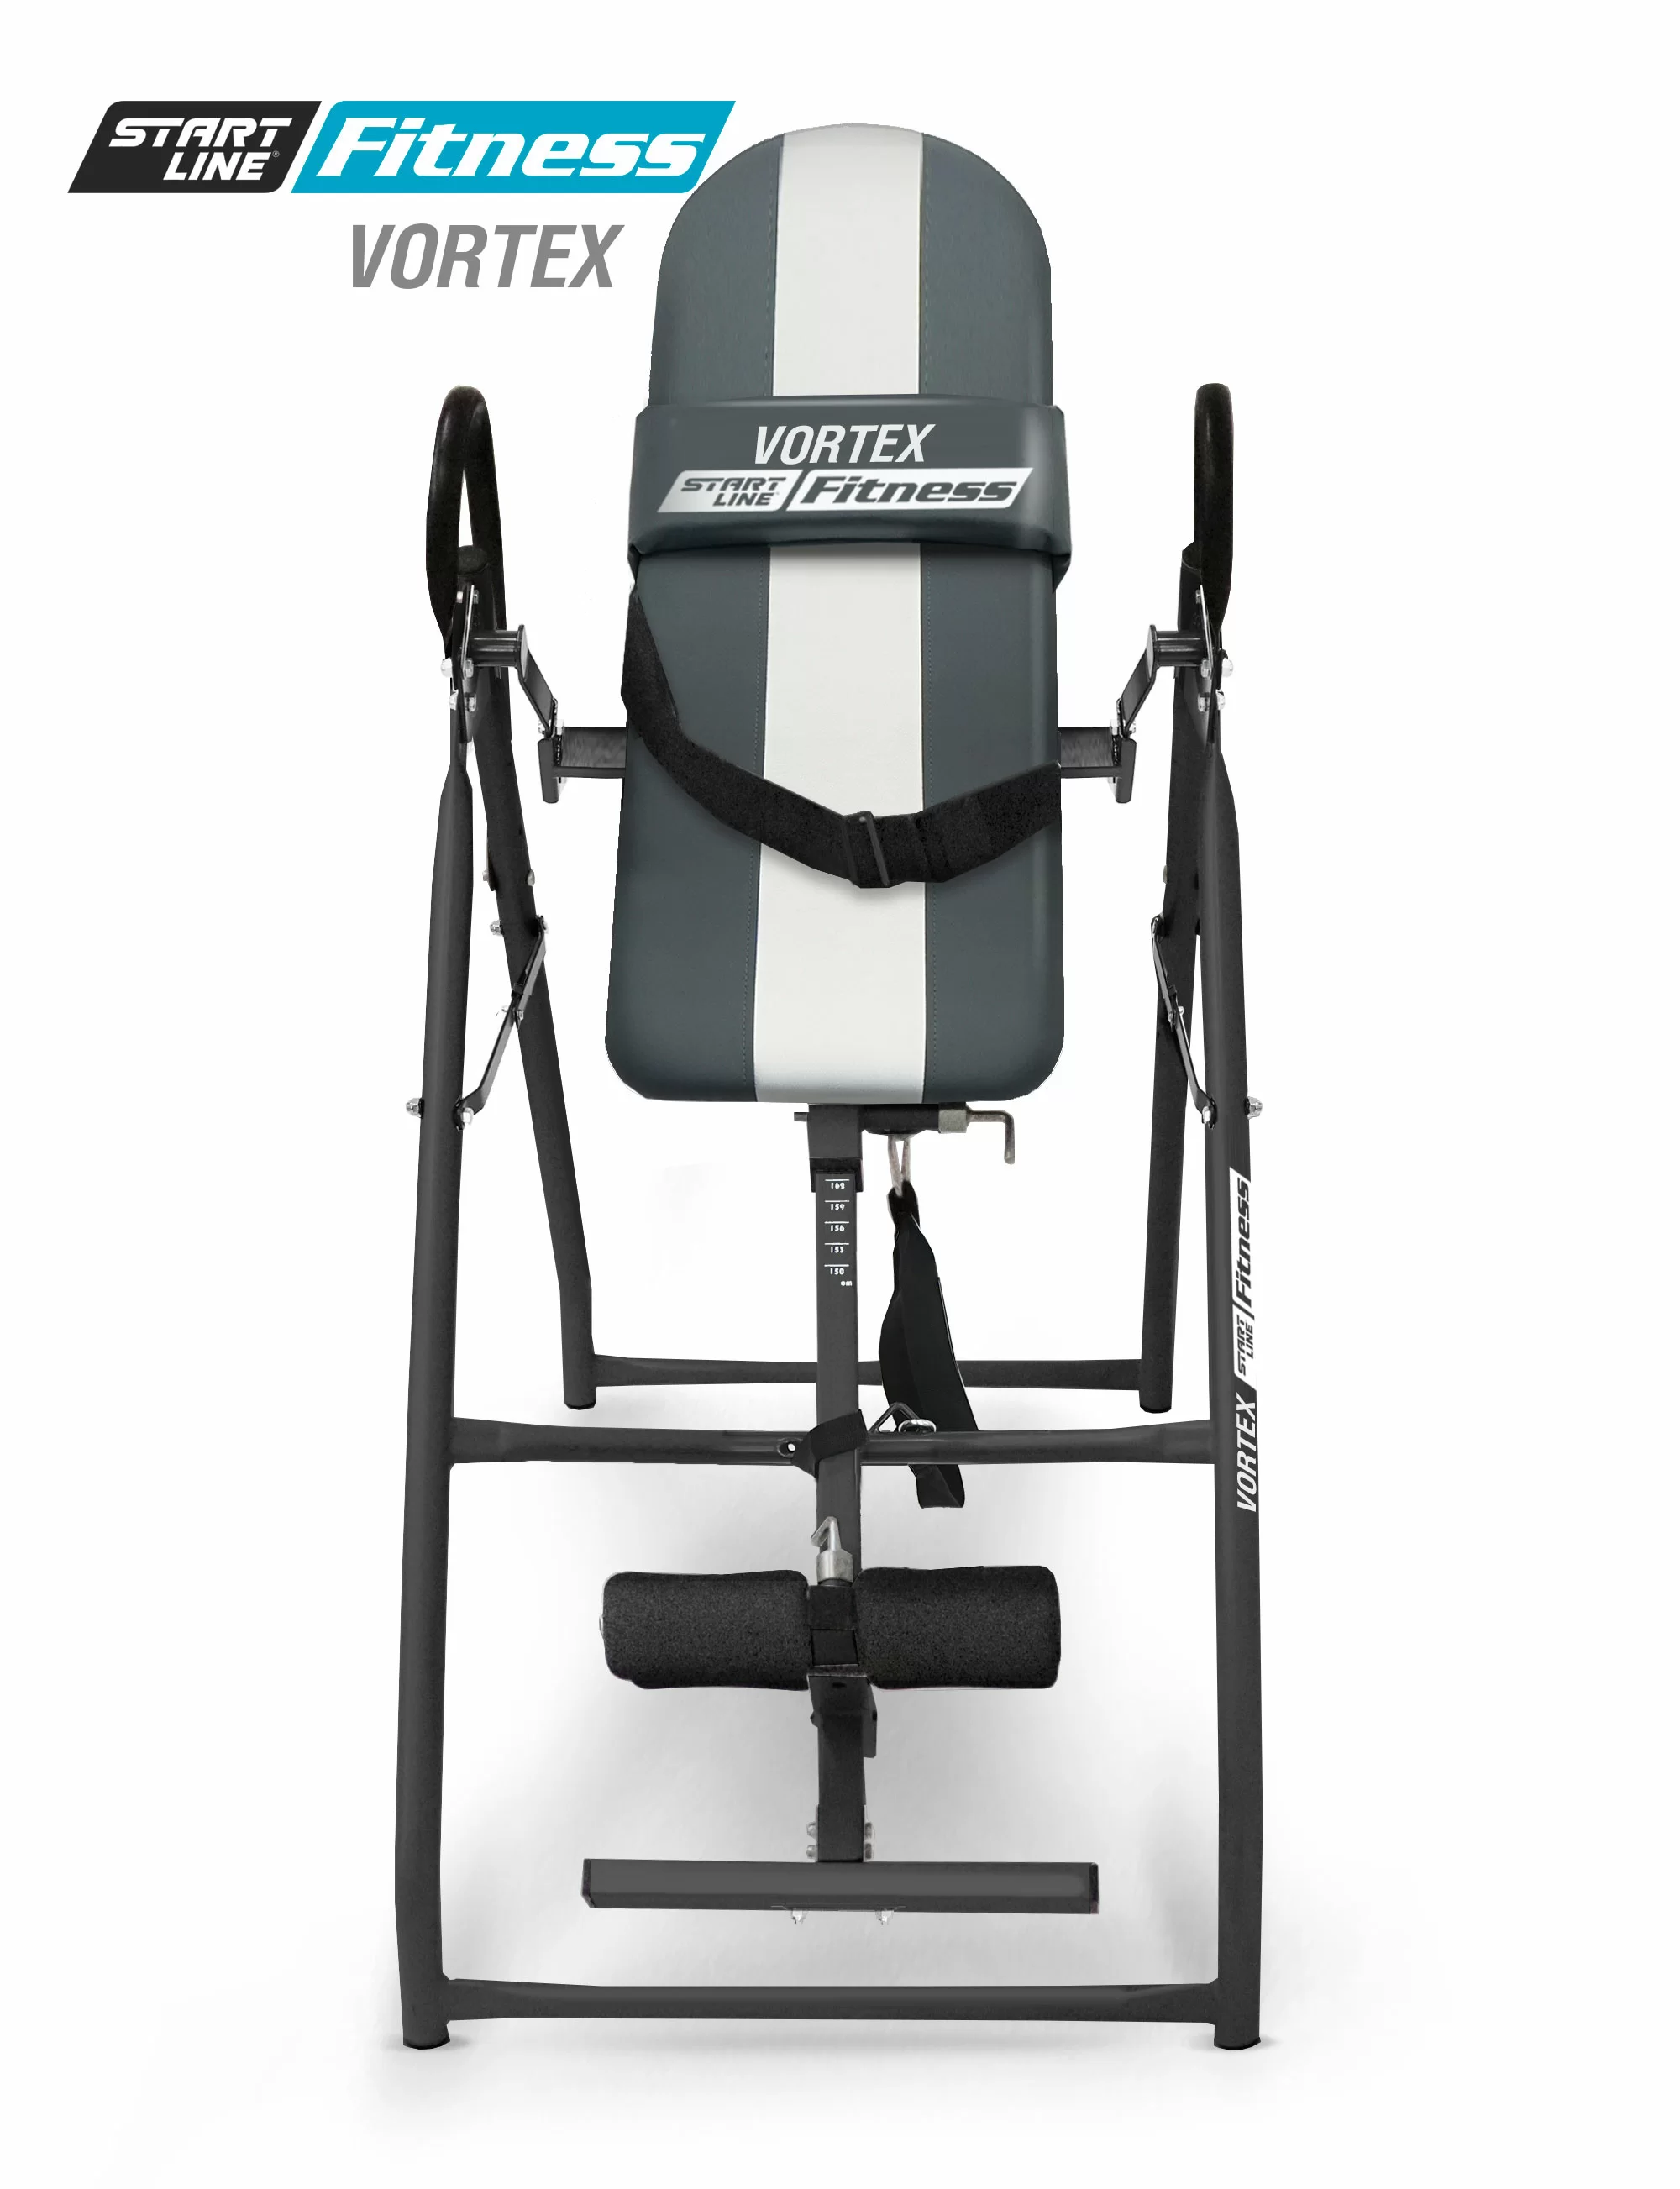 Фото Инверсионный стол Vortex серо-серебристый с подушкой со склада магазина СпортЕВ